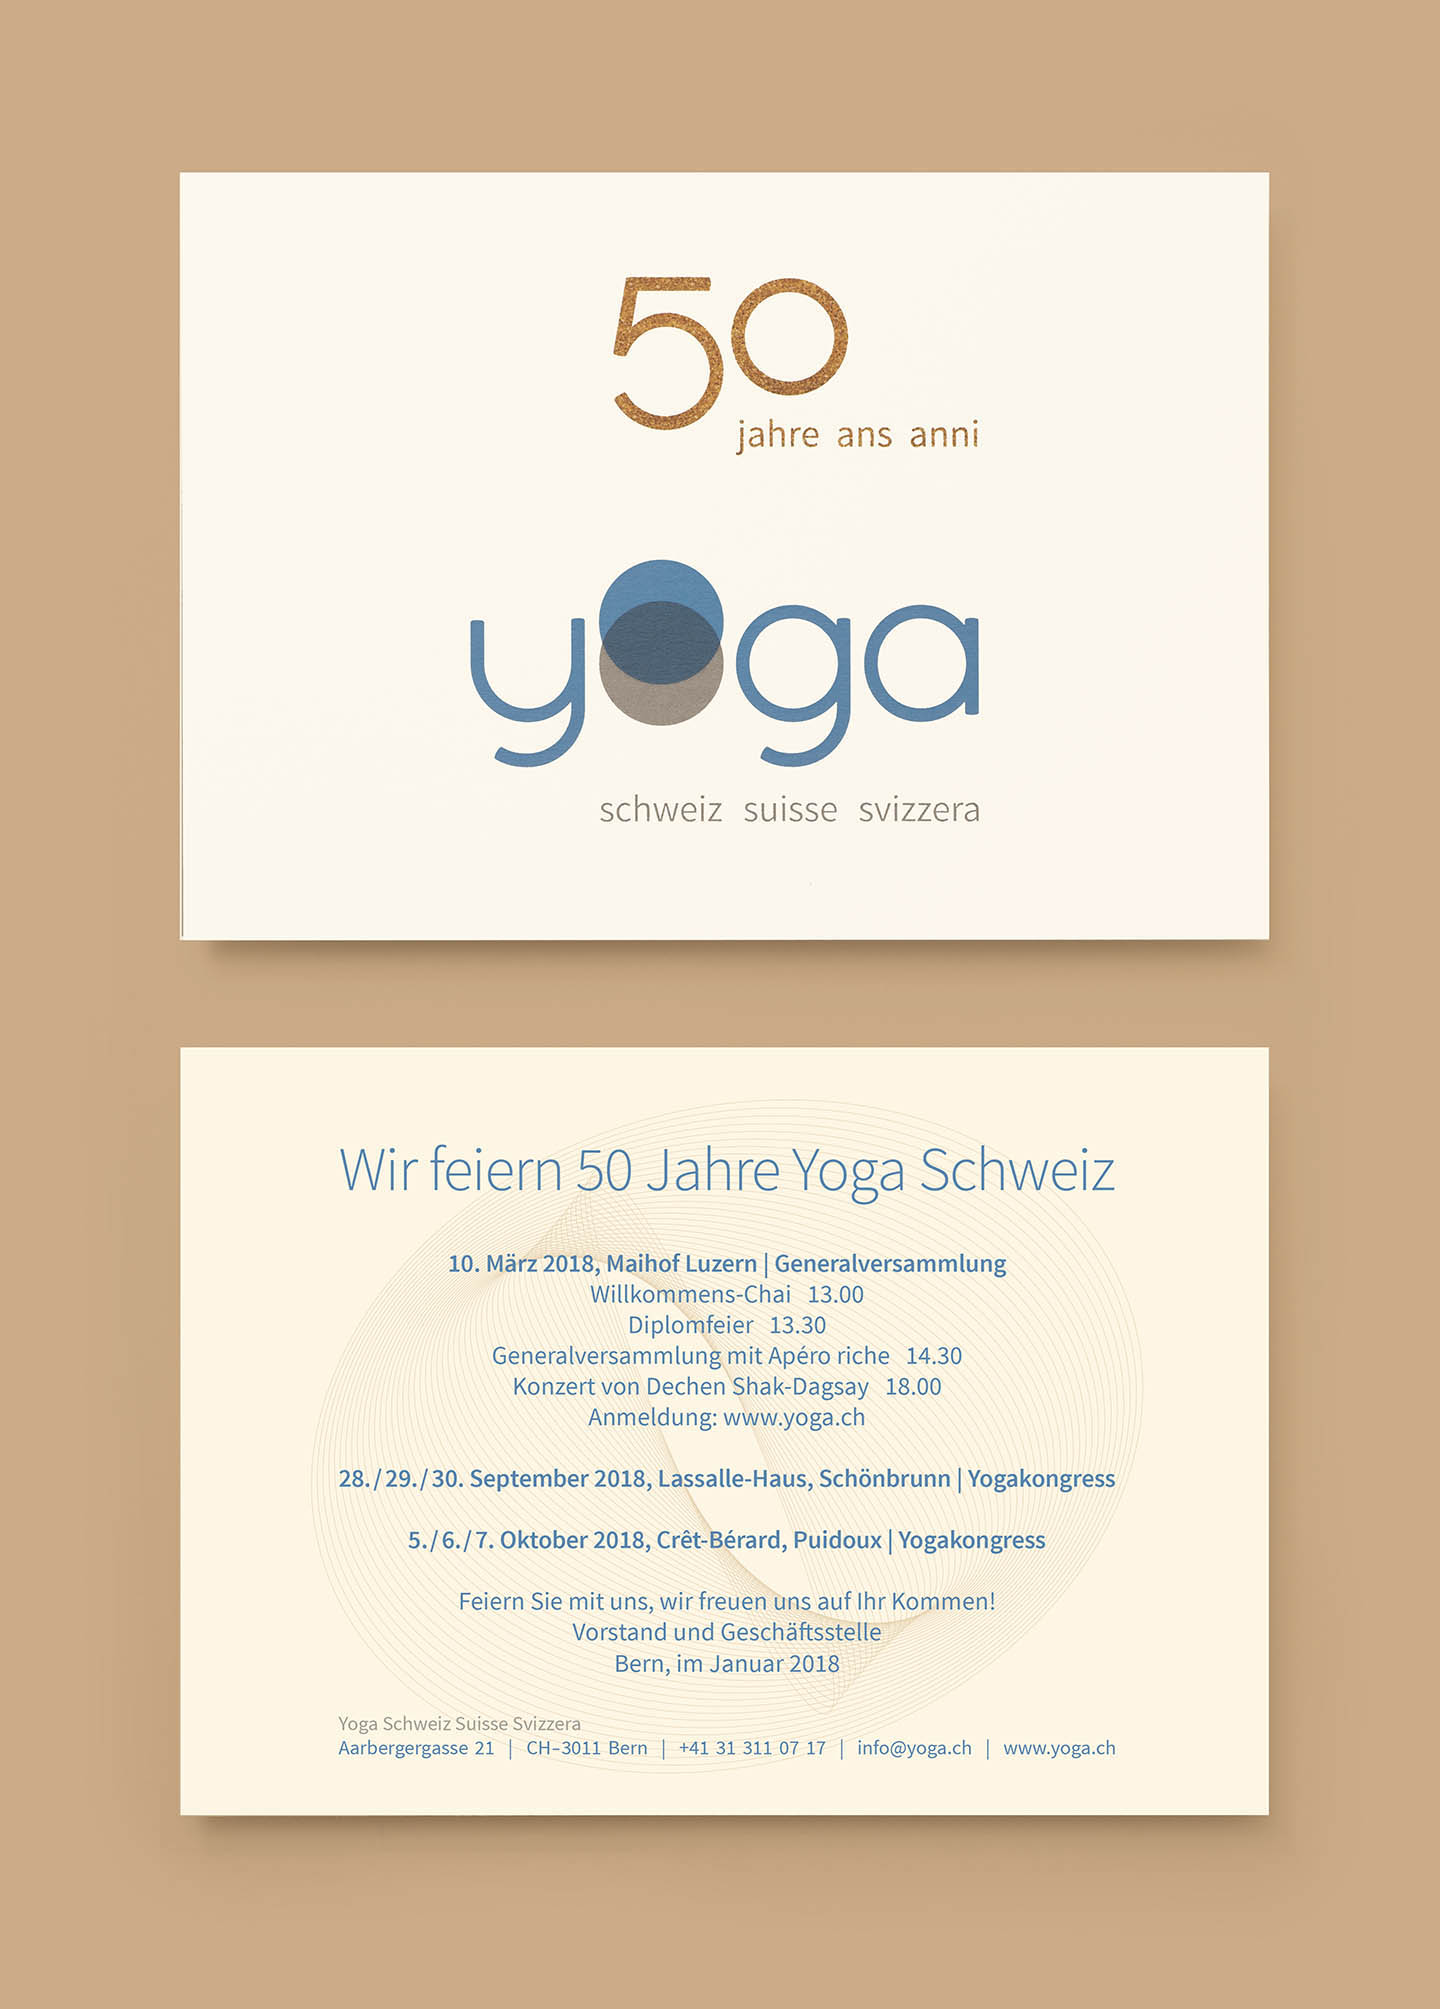 Yoga Schweiz Suisse Svizzera